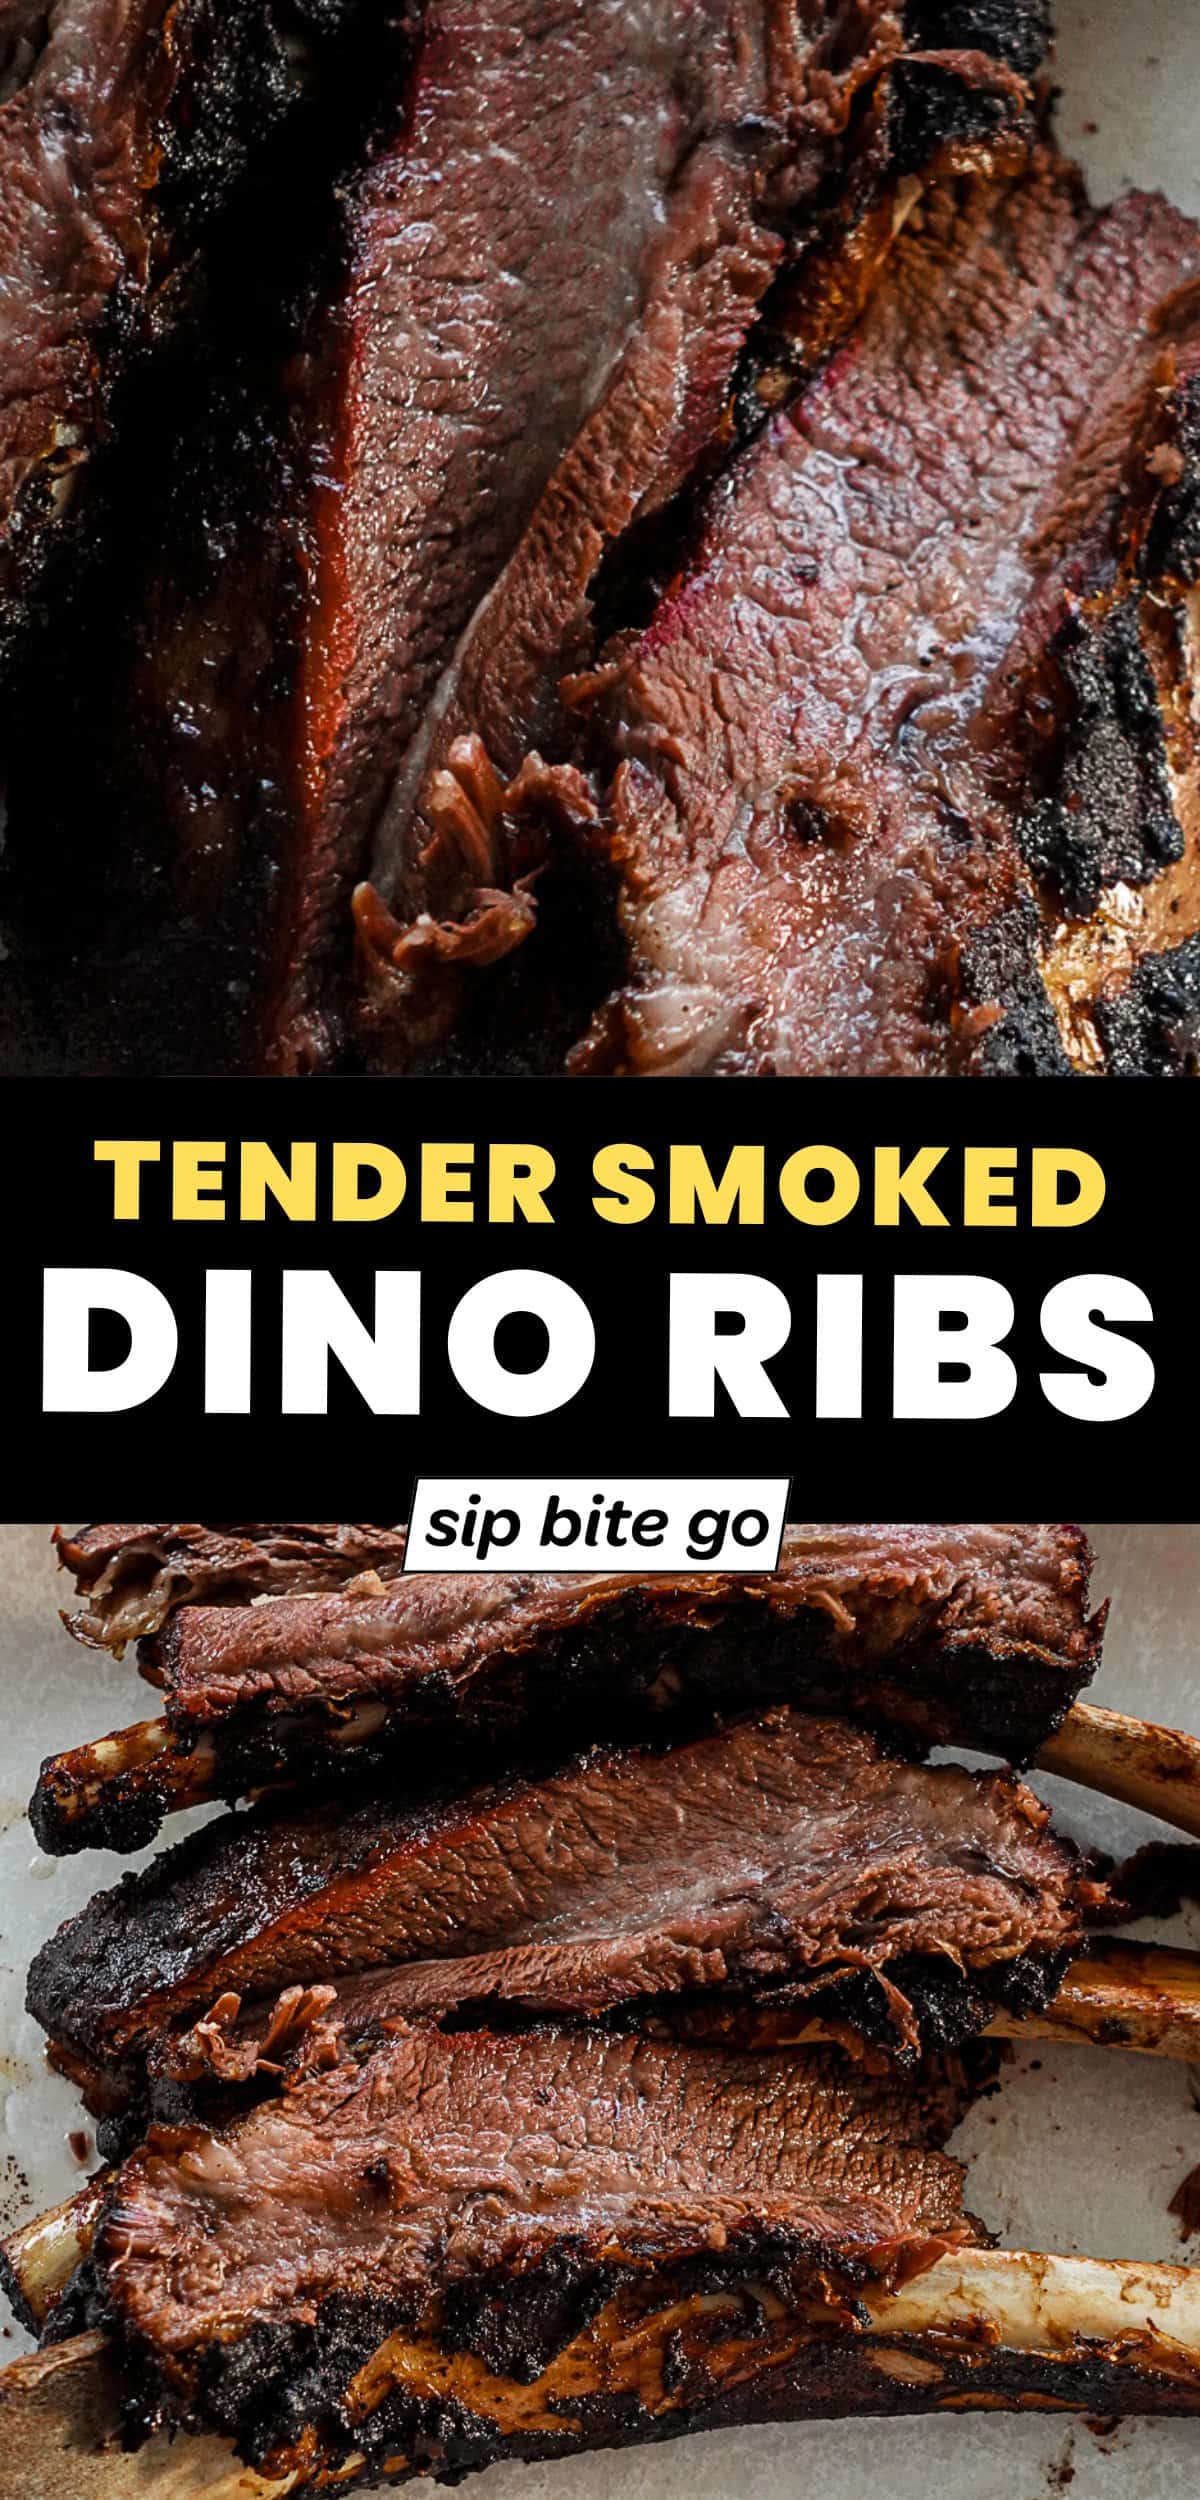 Smoked Dino Ribs Traeger Recipe